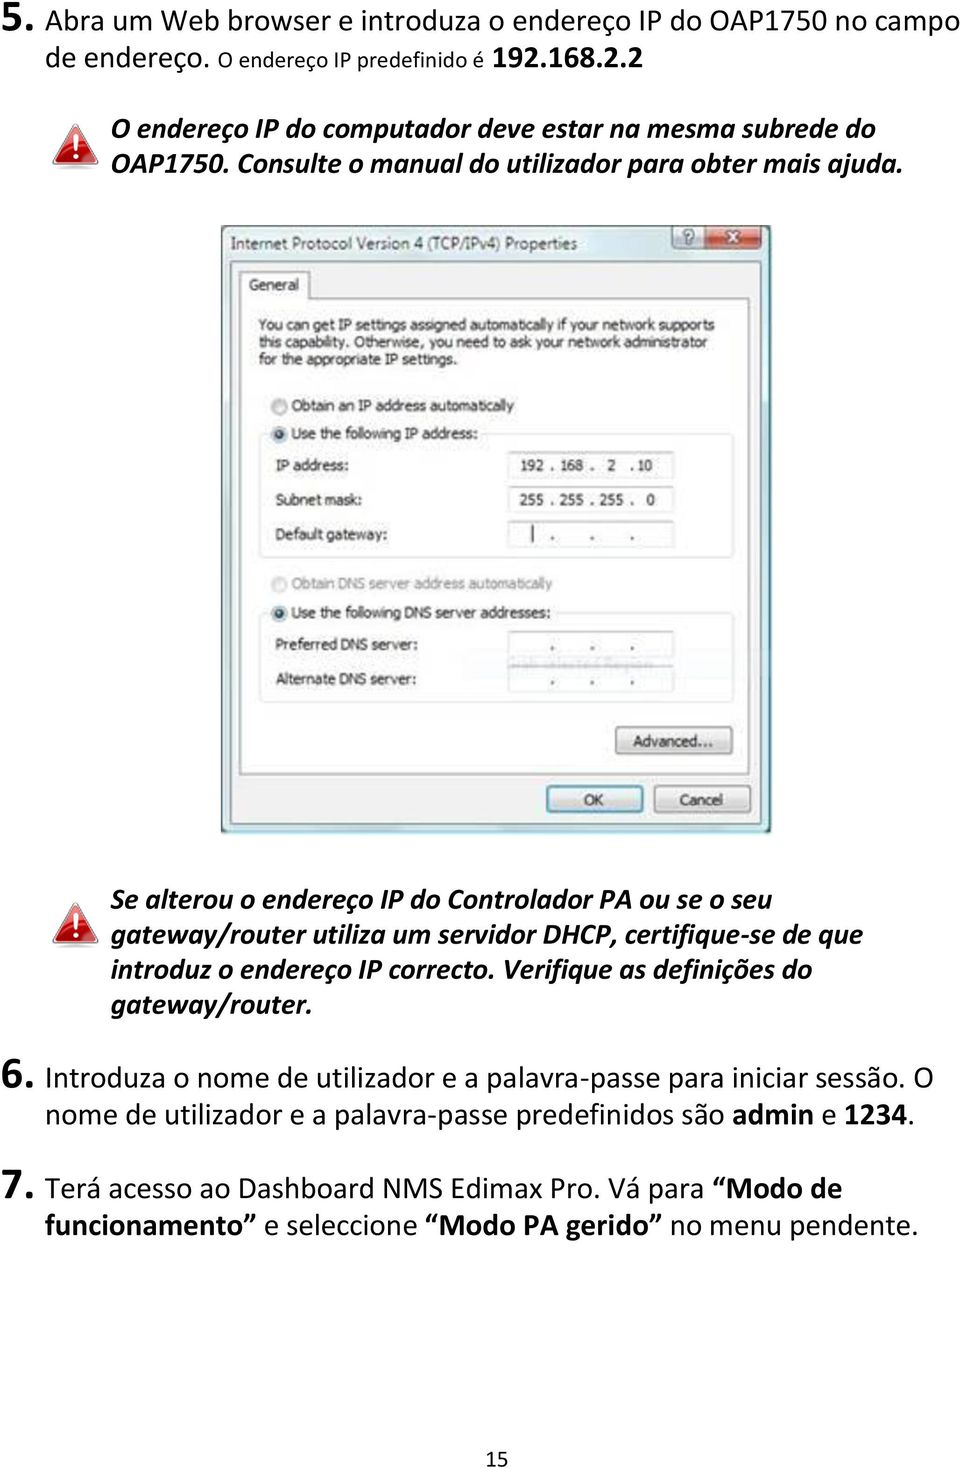 Se alterou o endereço IP do Controlador PA ou se o seu gateway/router utiliza um servidor DHCP, certifique-se de que introduz o endereço IP correcto.